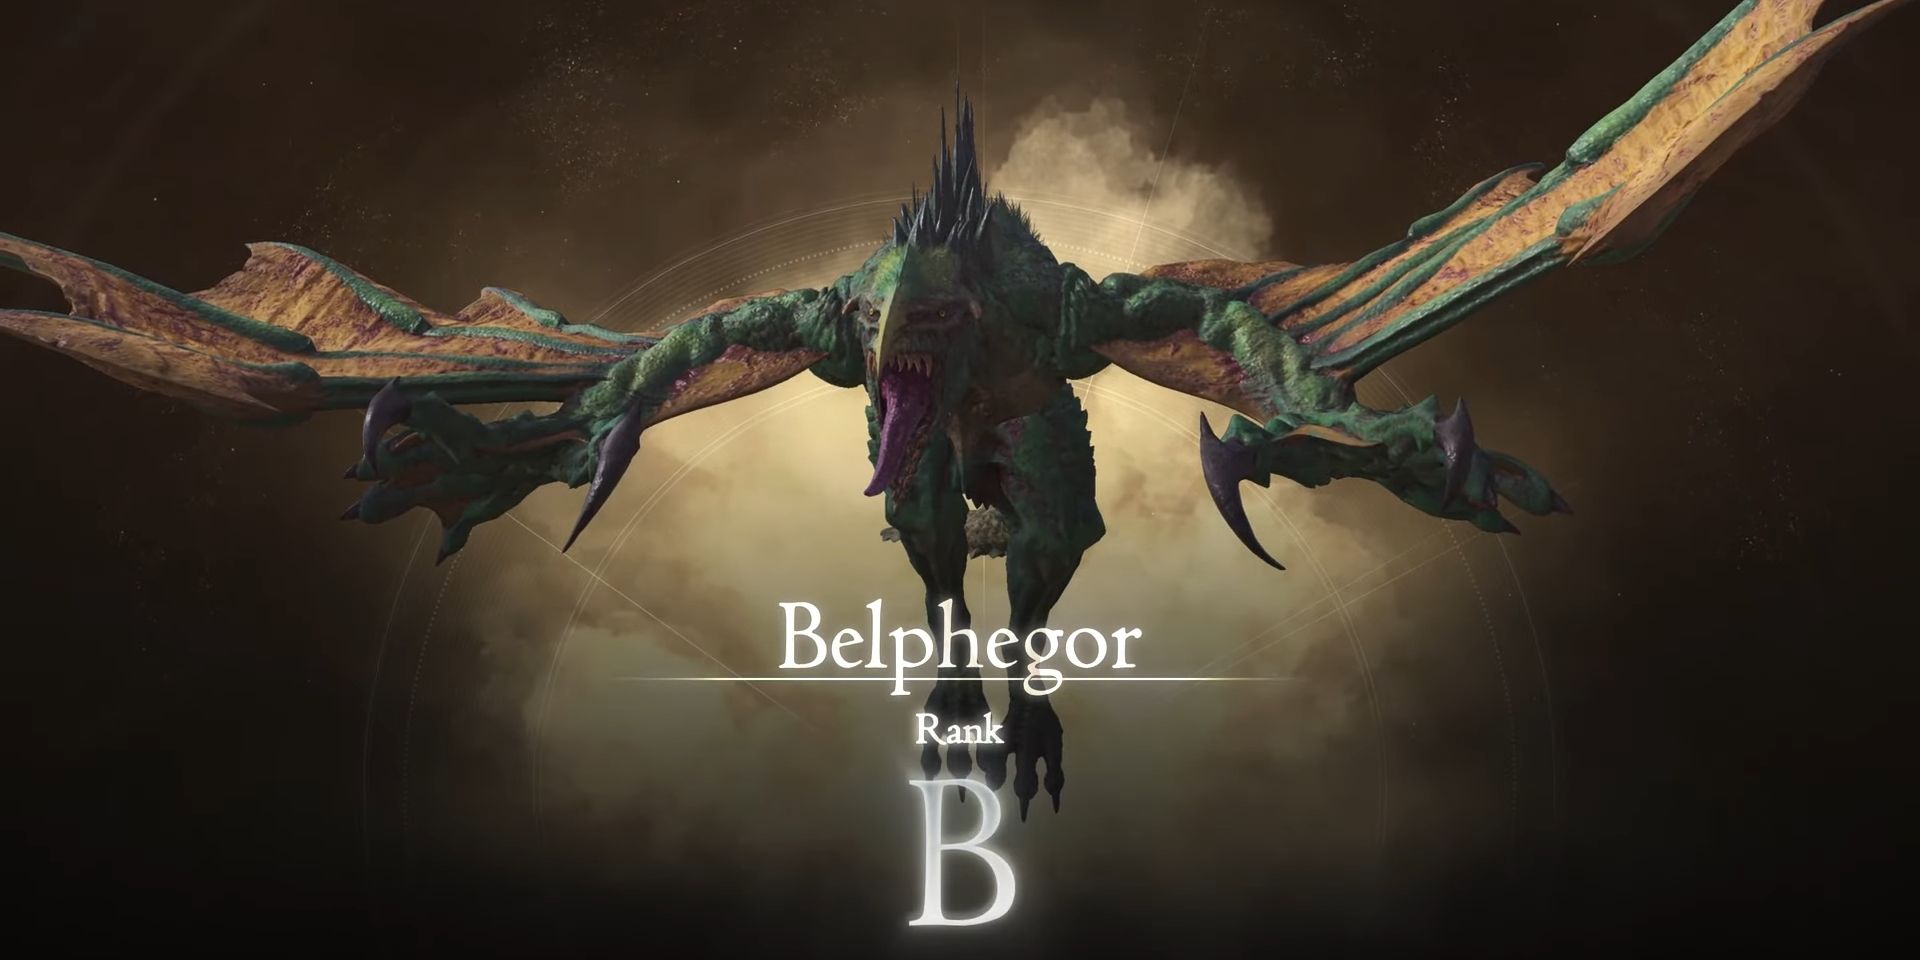 Belphegor's Hunt card in Final Fantasy 16, ranking it as a B-Rank mark. The green dragon Belphegoar flies and roars.